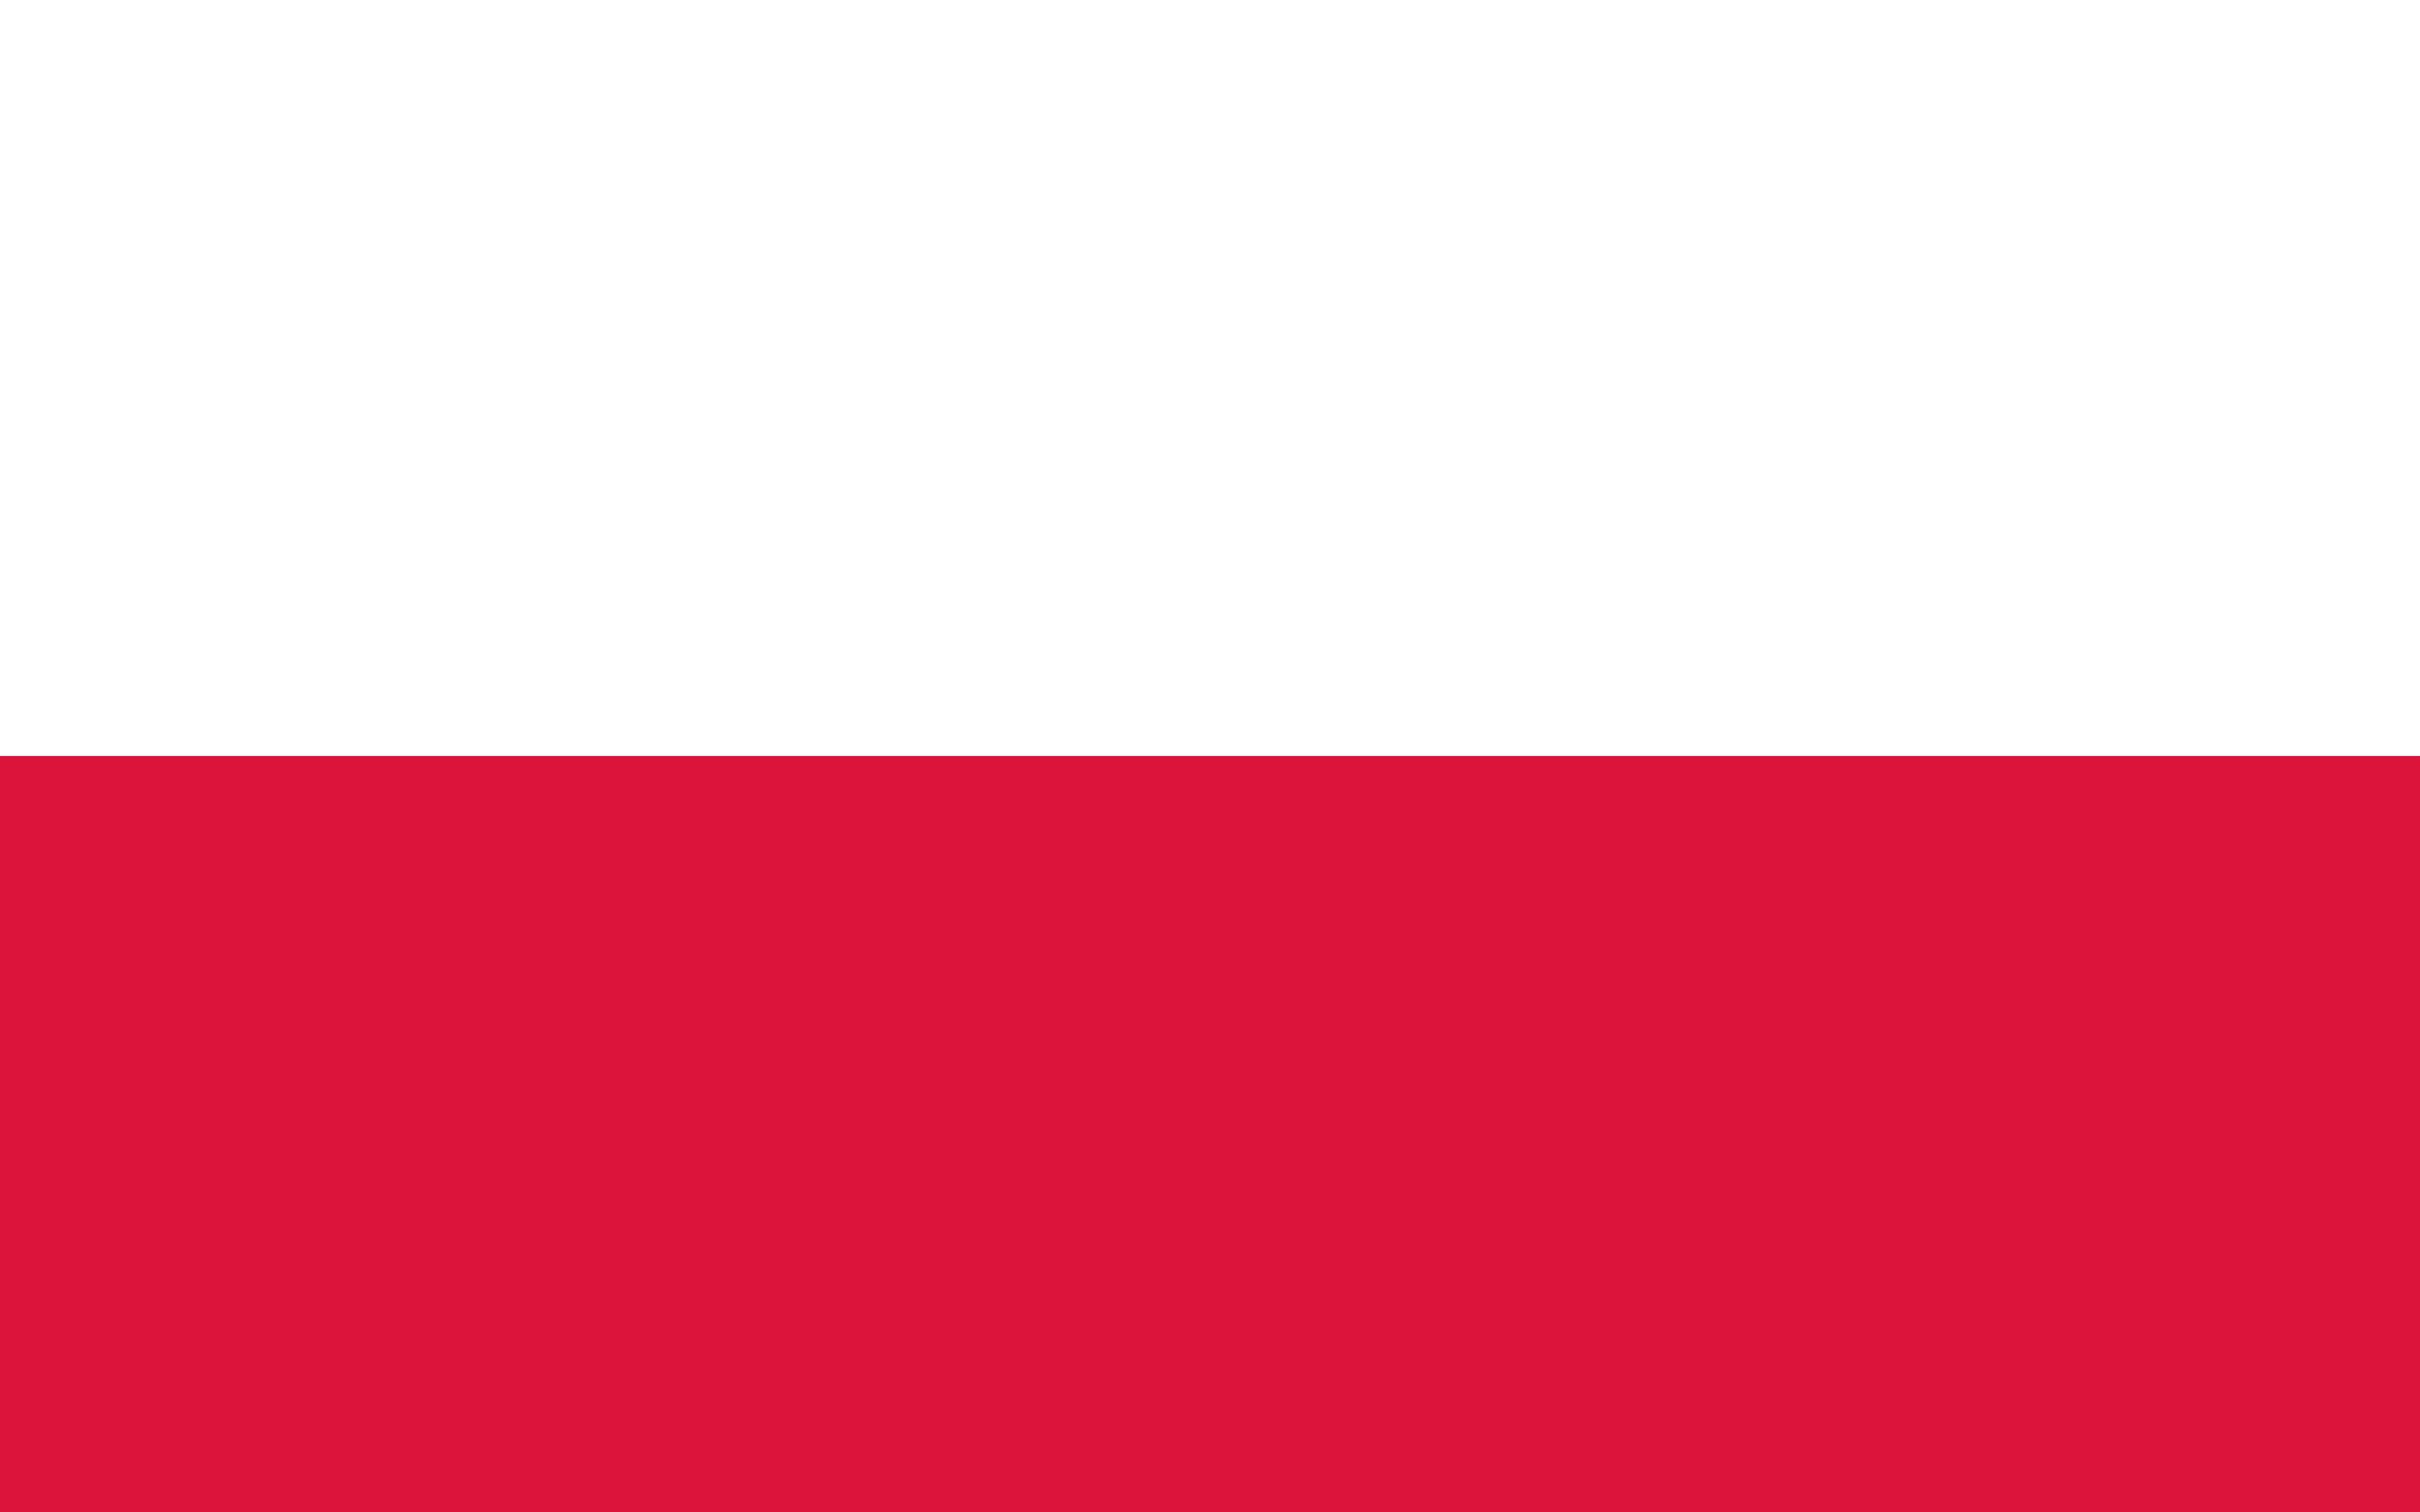 Poland Flag vector